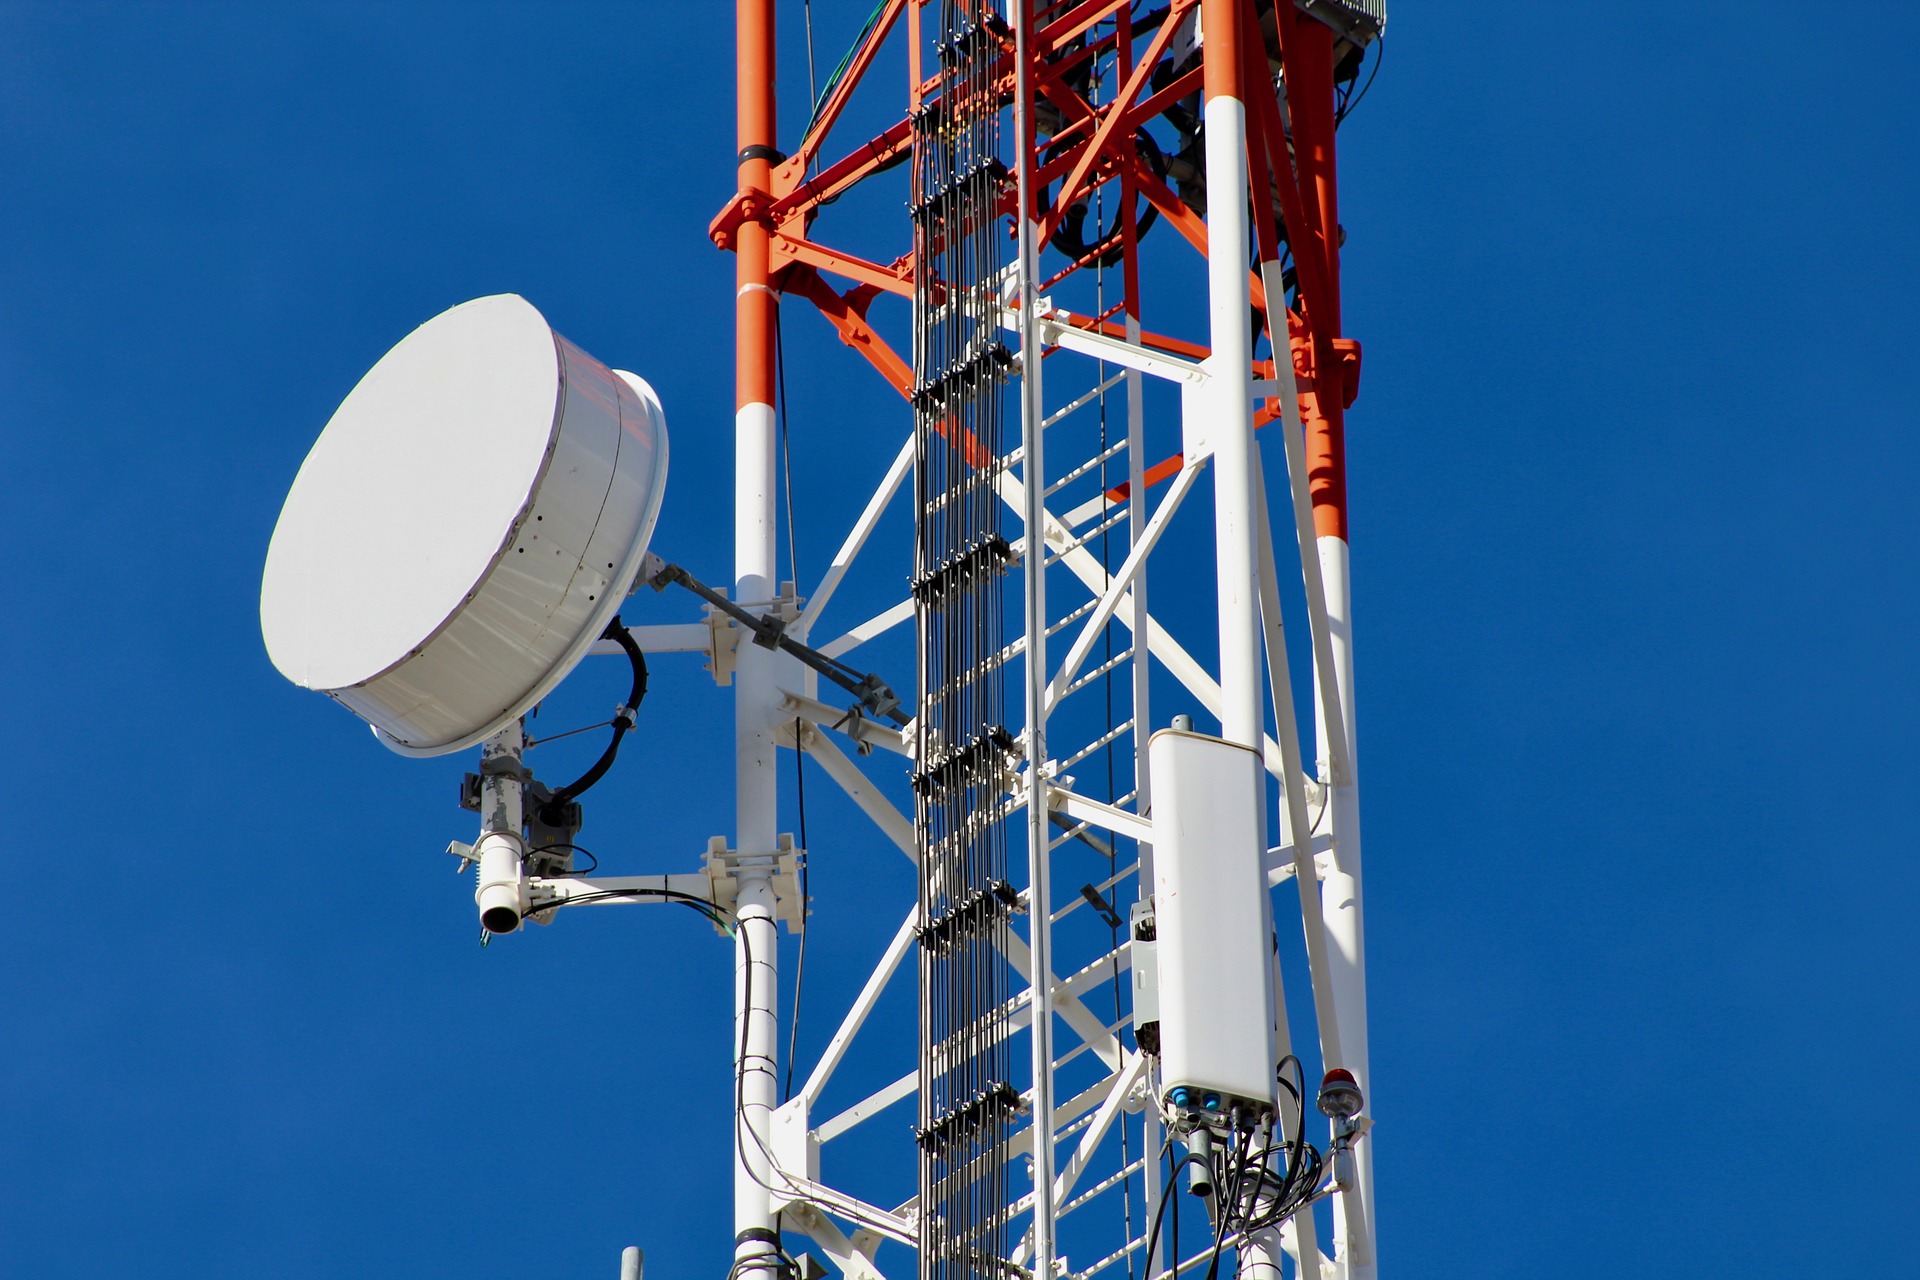 TIM testa dividir 2G com Vivo e defende desligamento de redes antigas | Telecomunicações